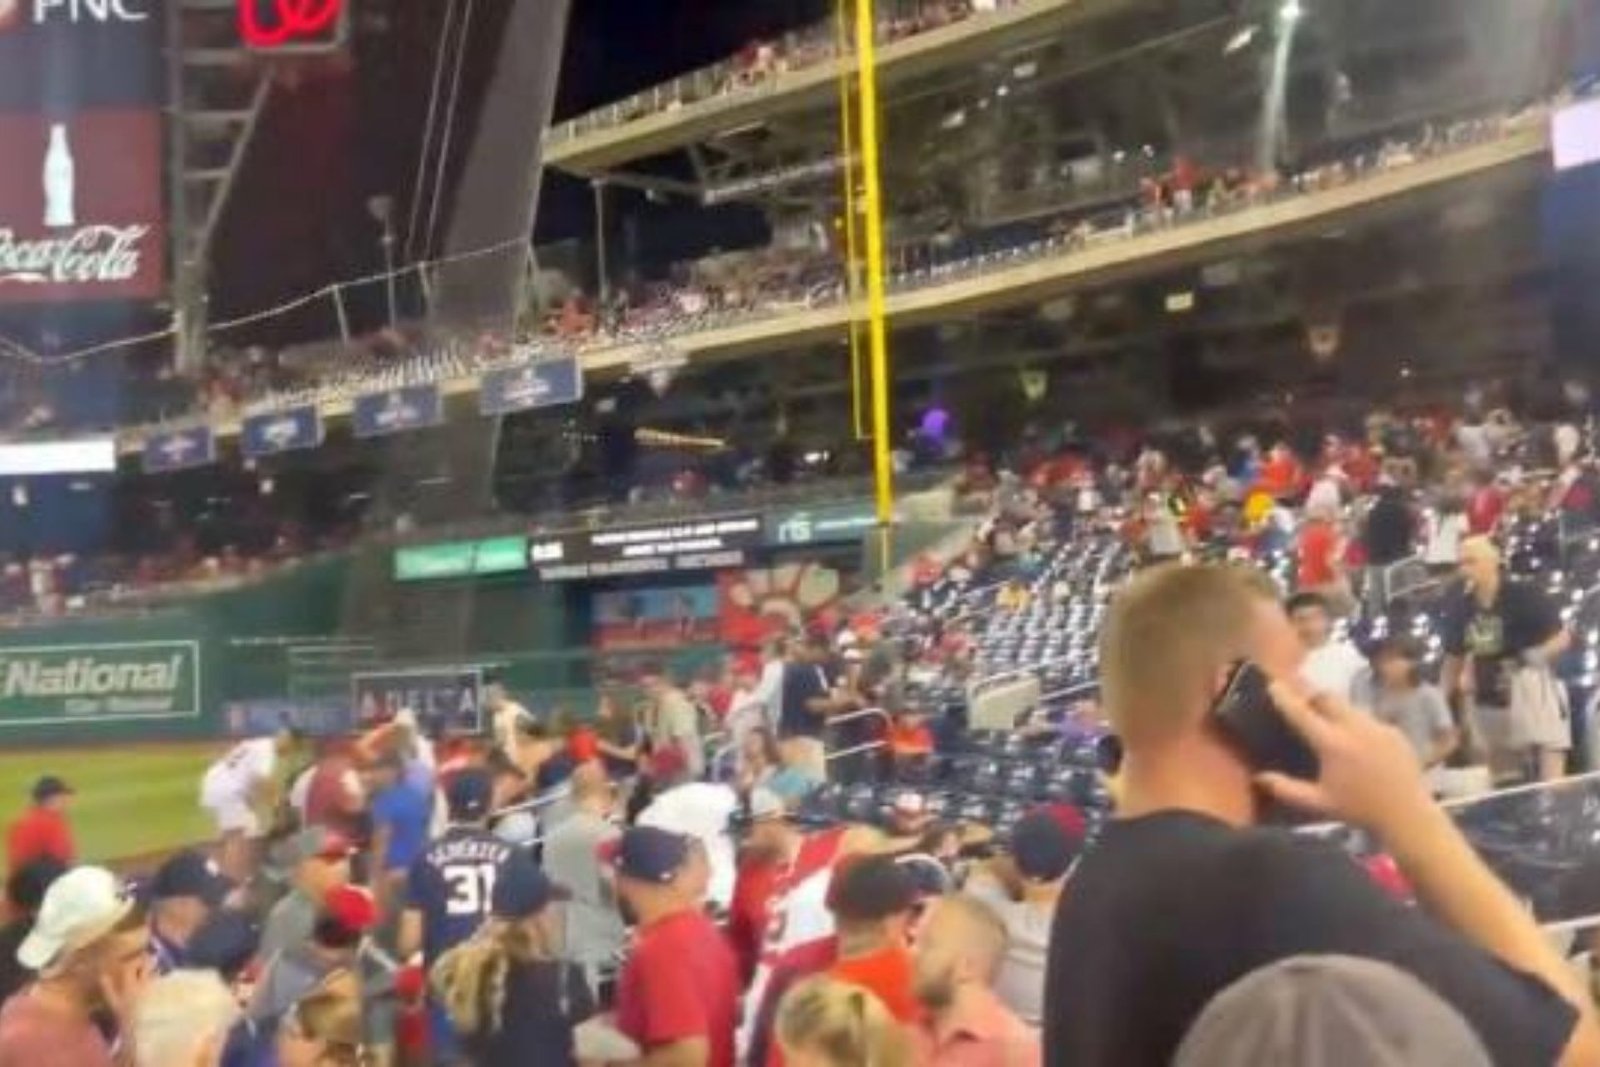 Baseball Fans Scramble After A Shooting Outside Washington National Stadium.